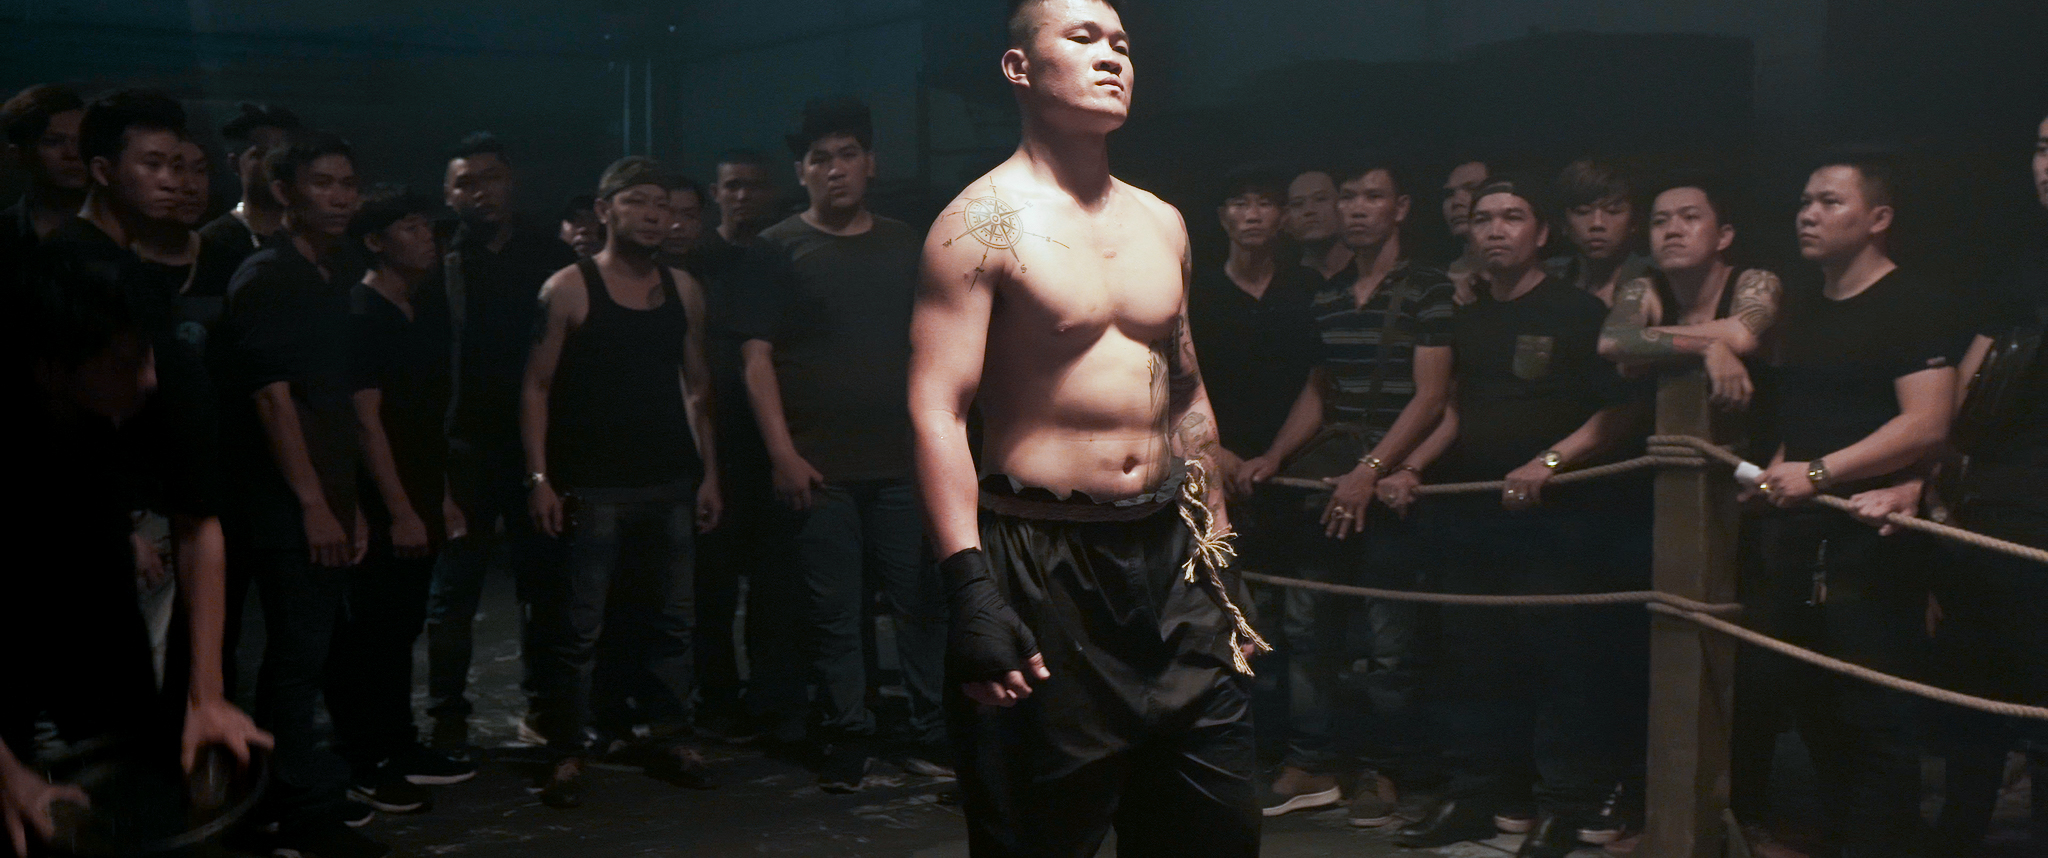 Trương Đình Hoàng – võ sĩ boxing tiếng tăm trên đấu trường quốc tế